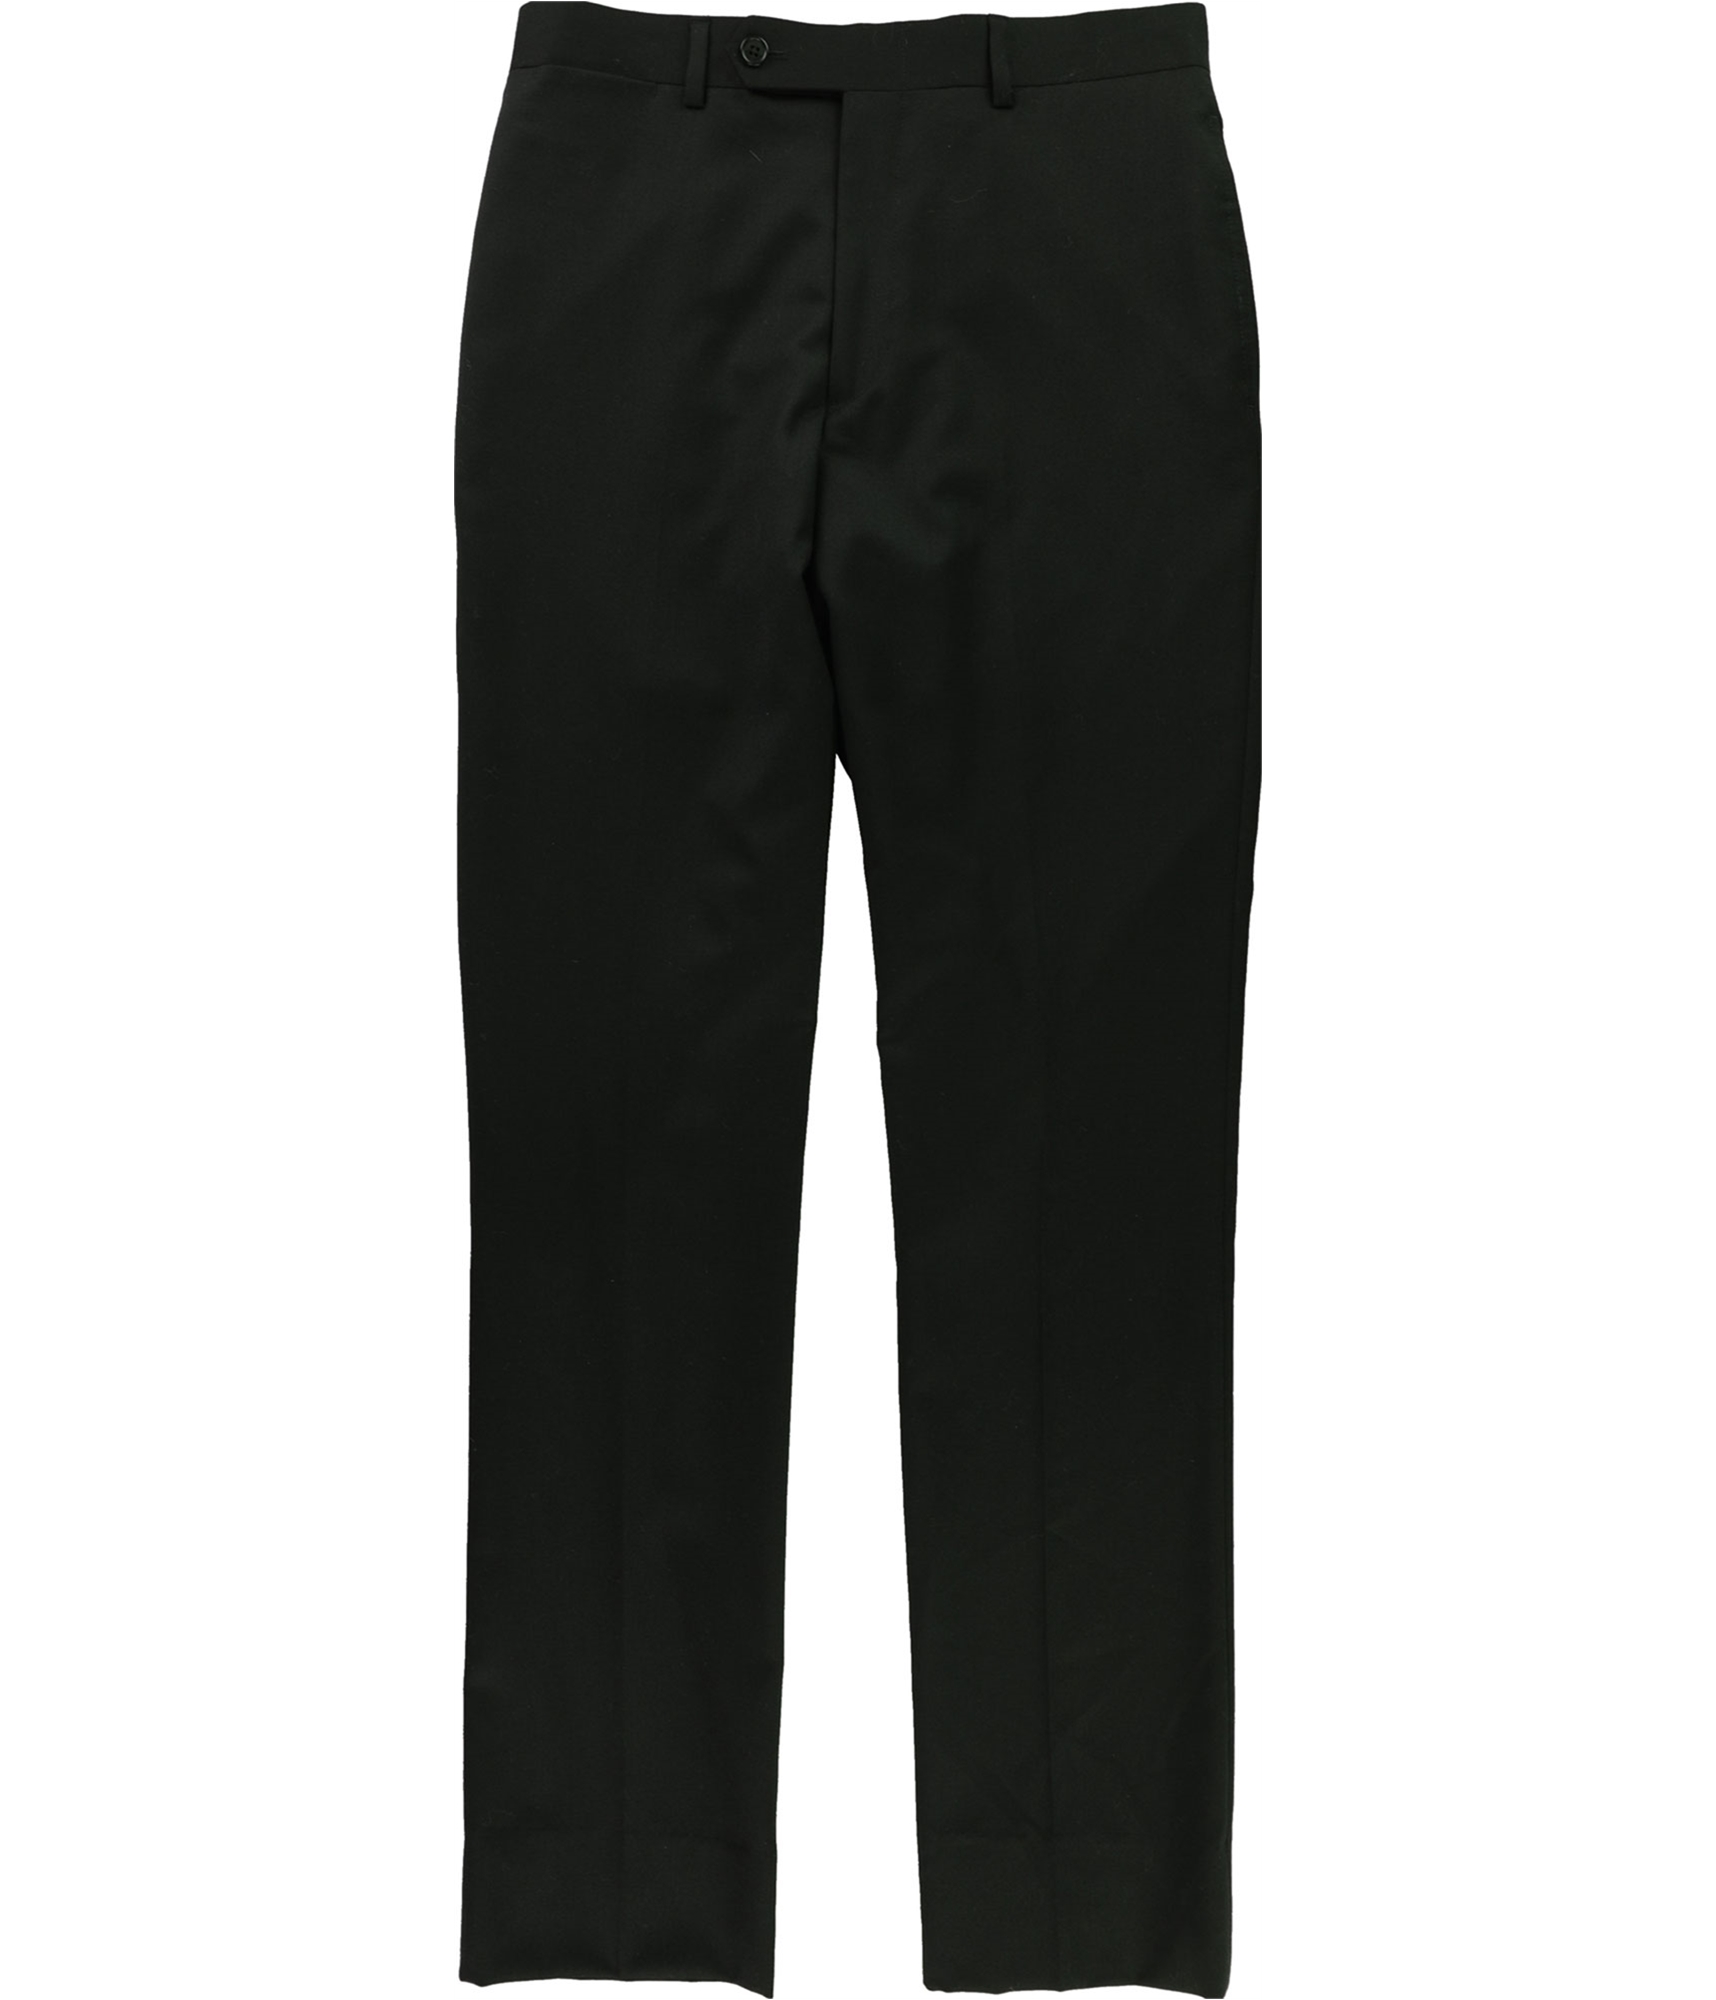 Tommy Hilfiger Mens Solid Dress Pants Slacks, Black, 30W x 32L | eBay